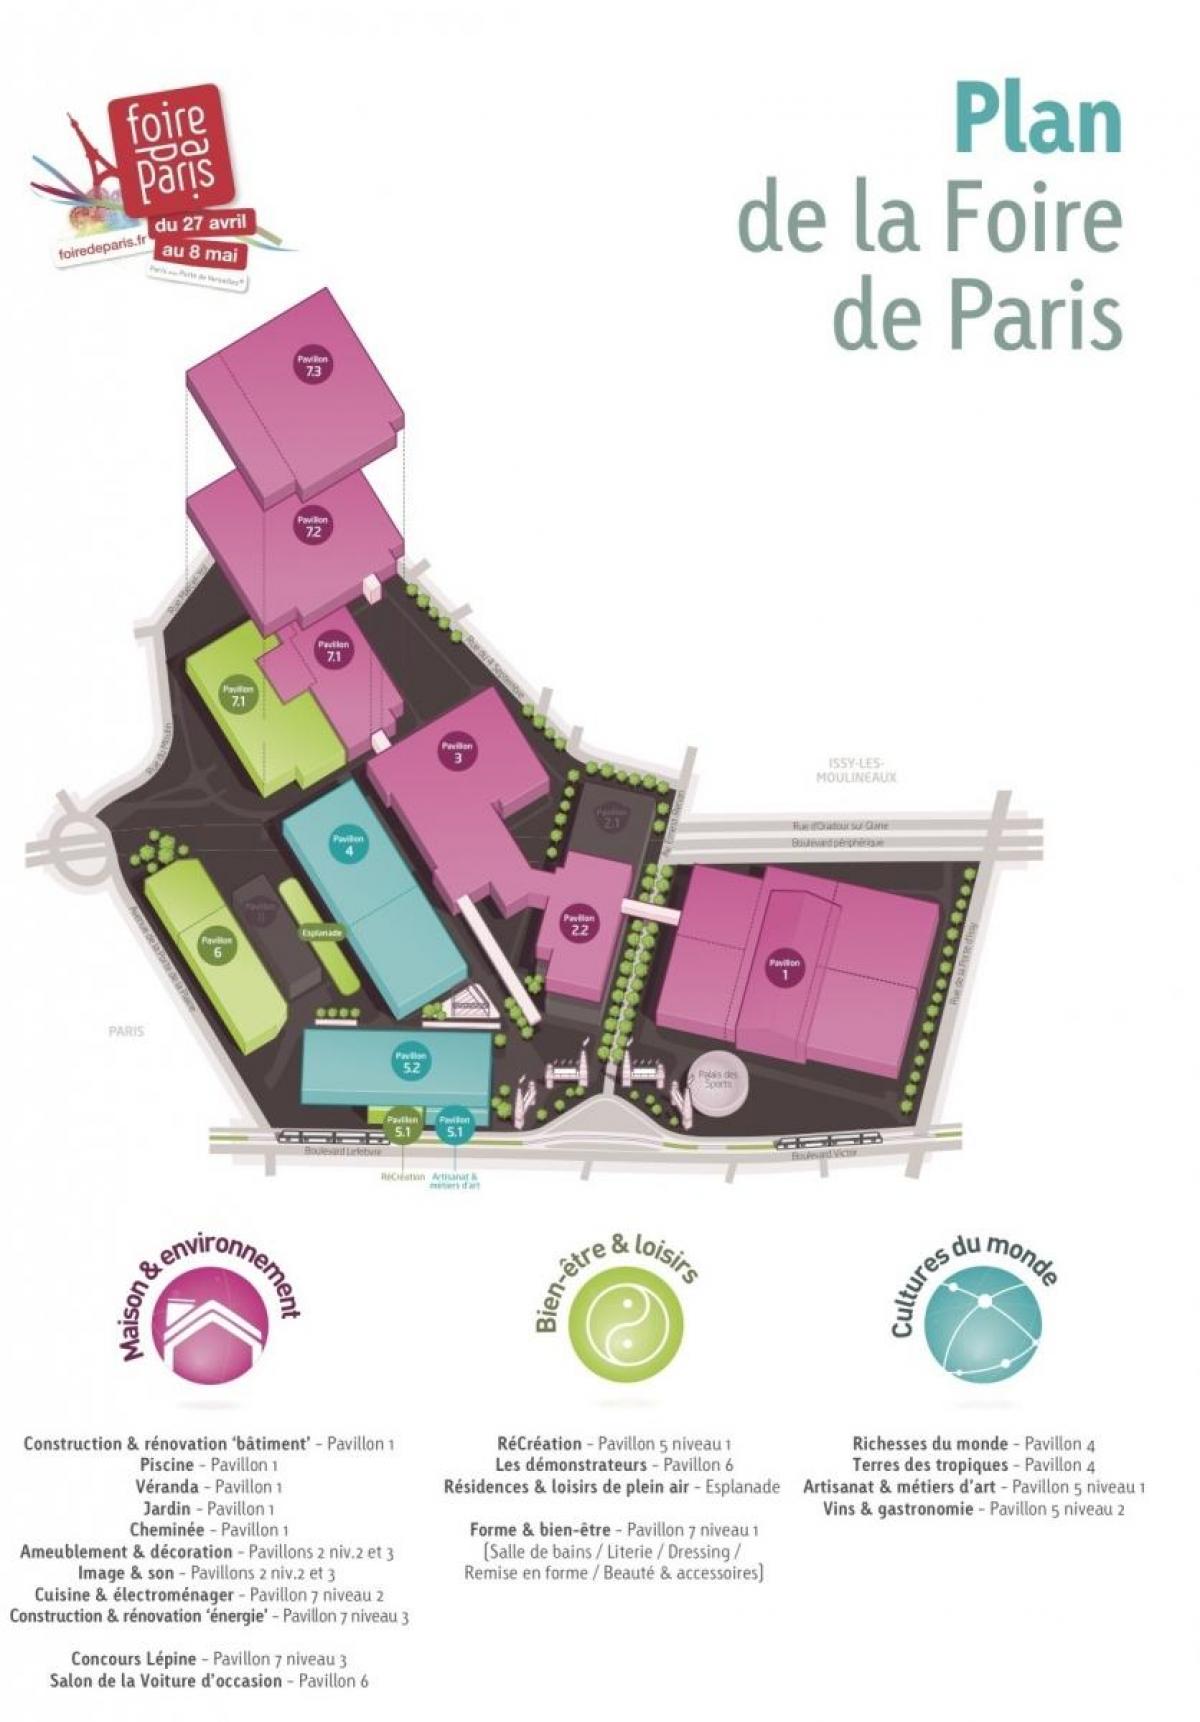 Harta e Foire de Paris